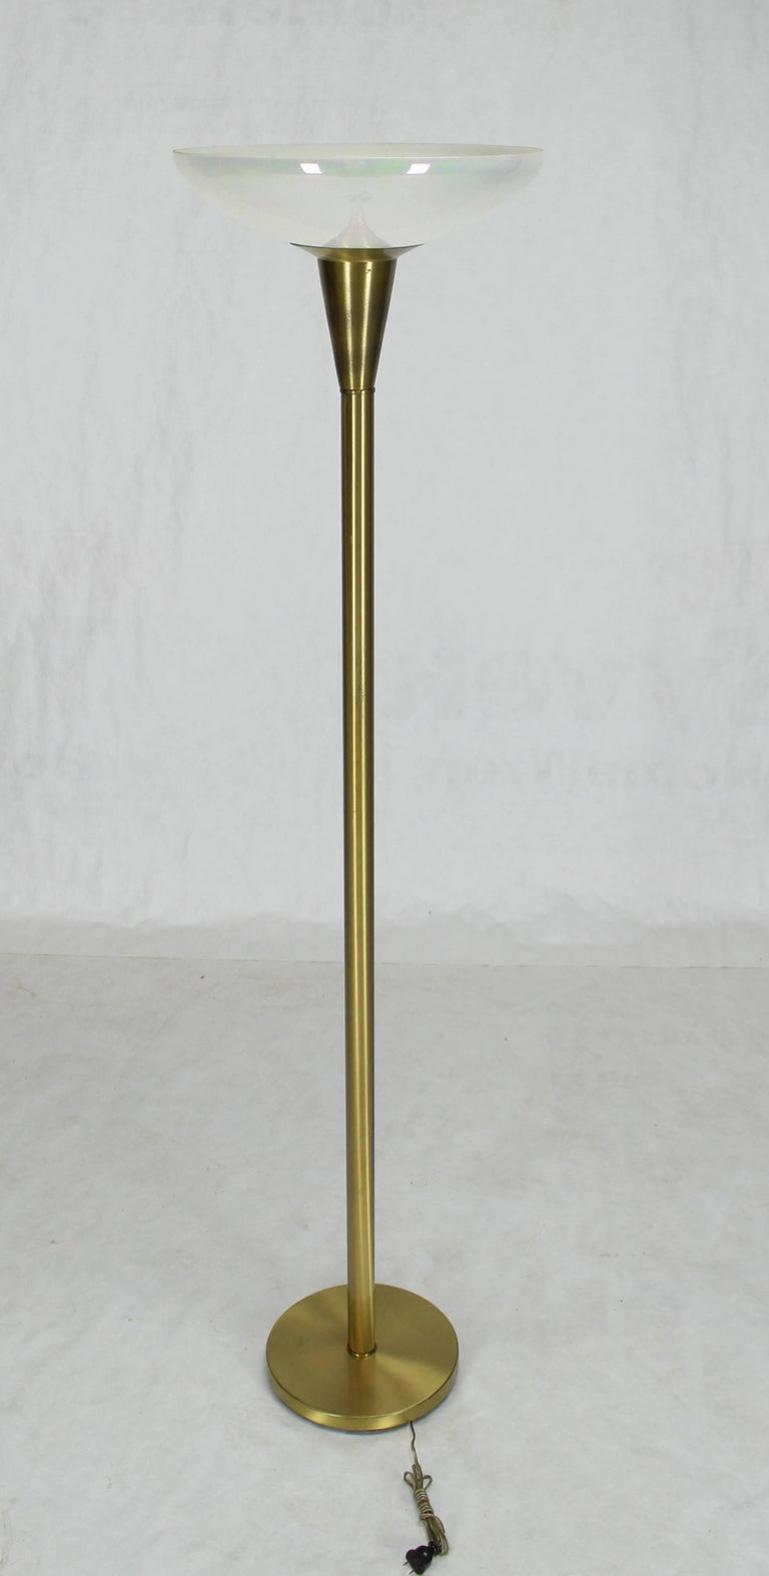 Brass Tall Torchere Floor Lamp Iridescent Shade